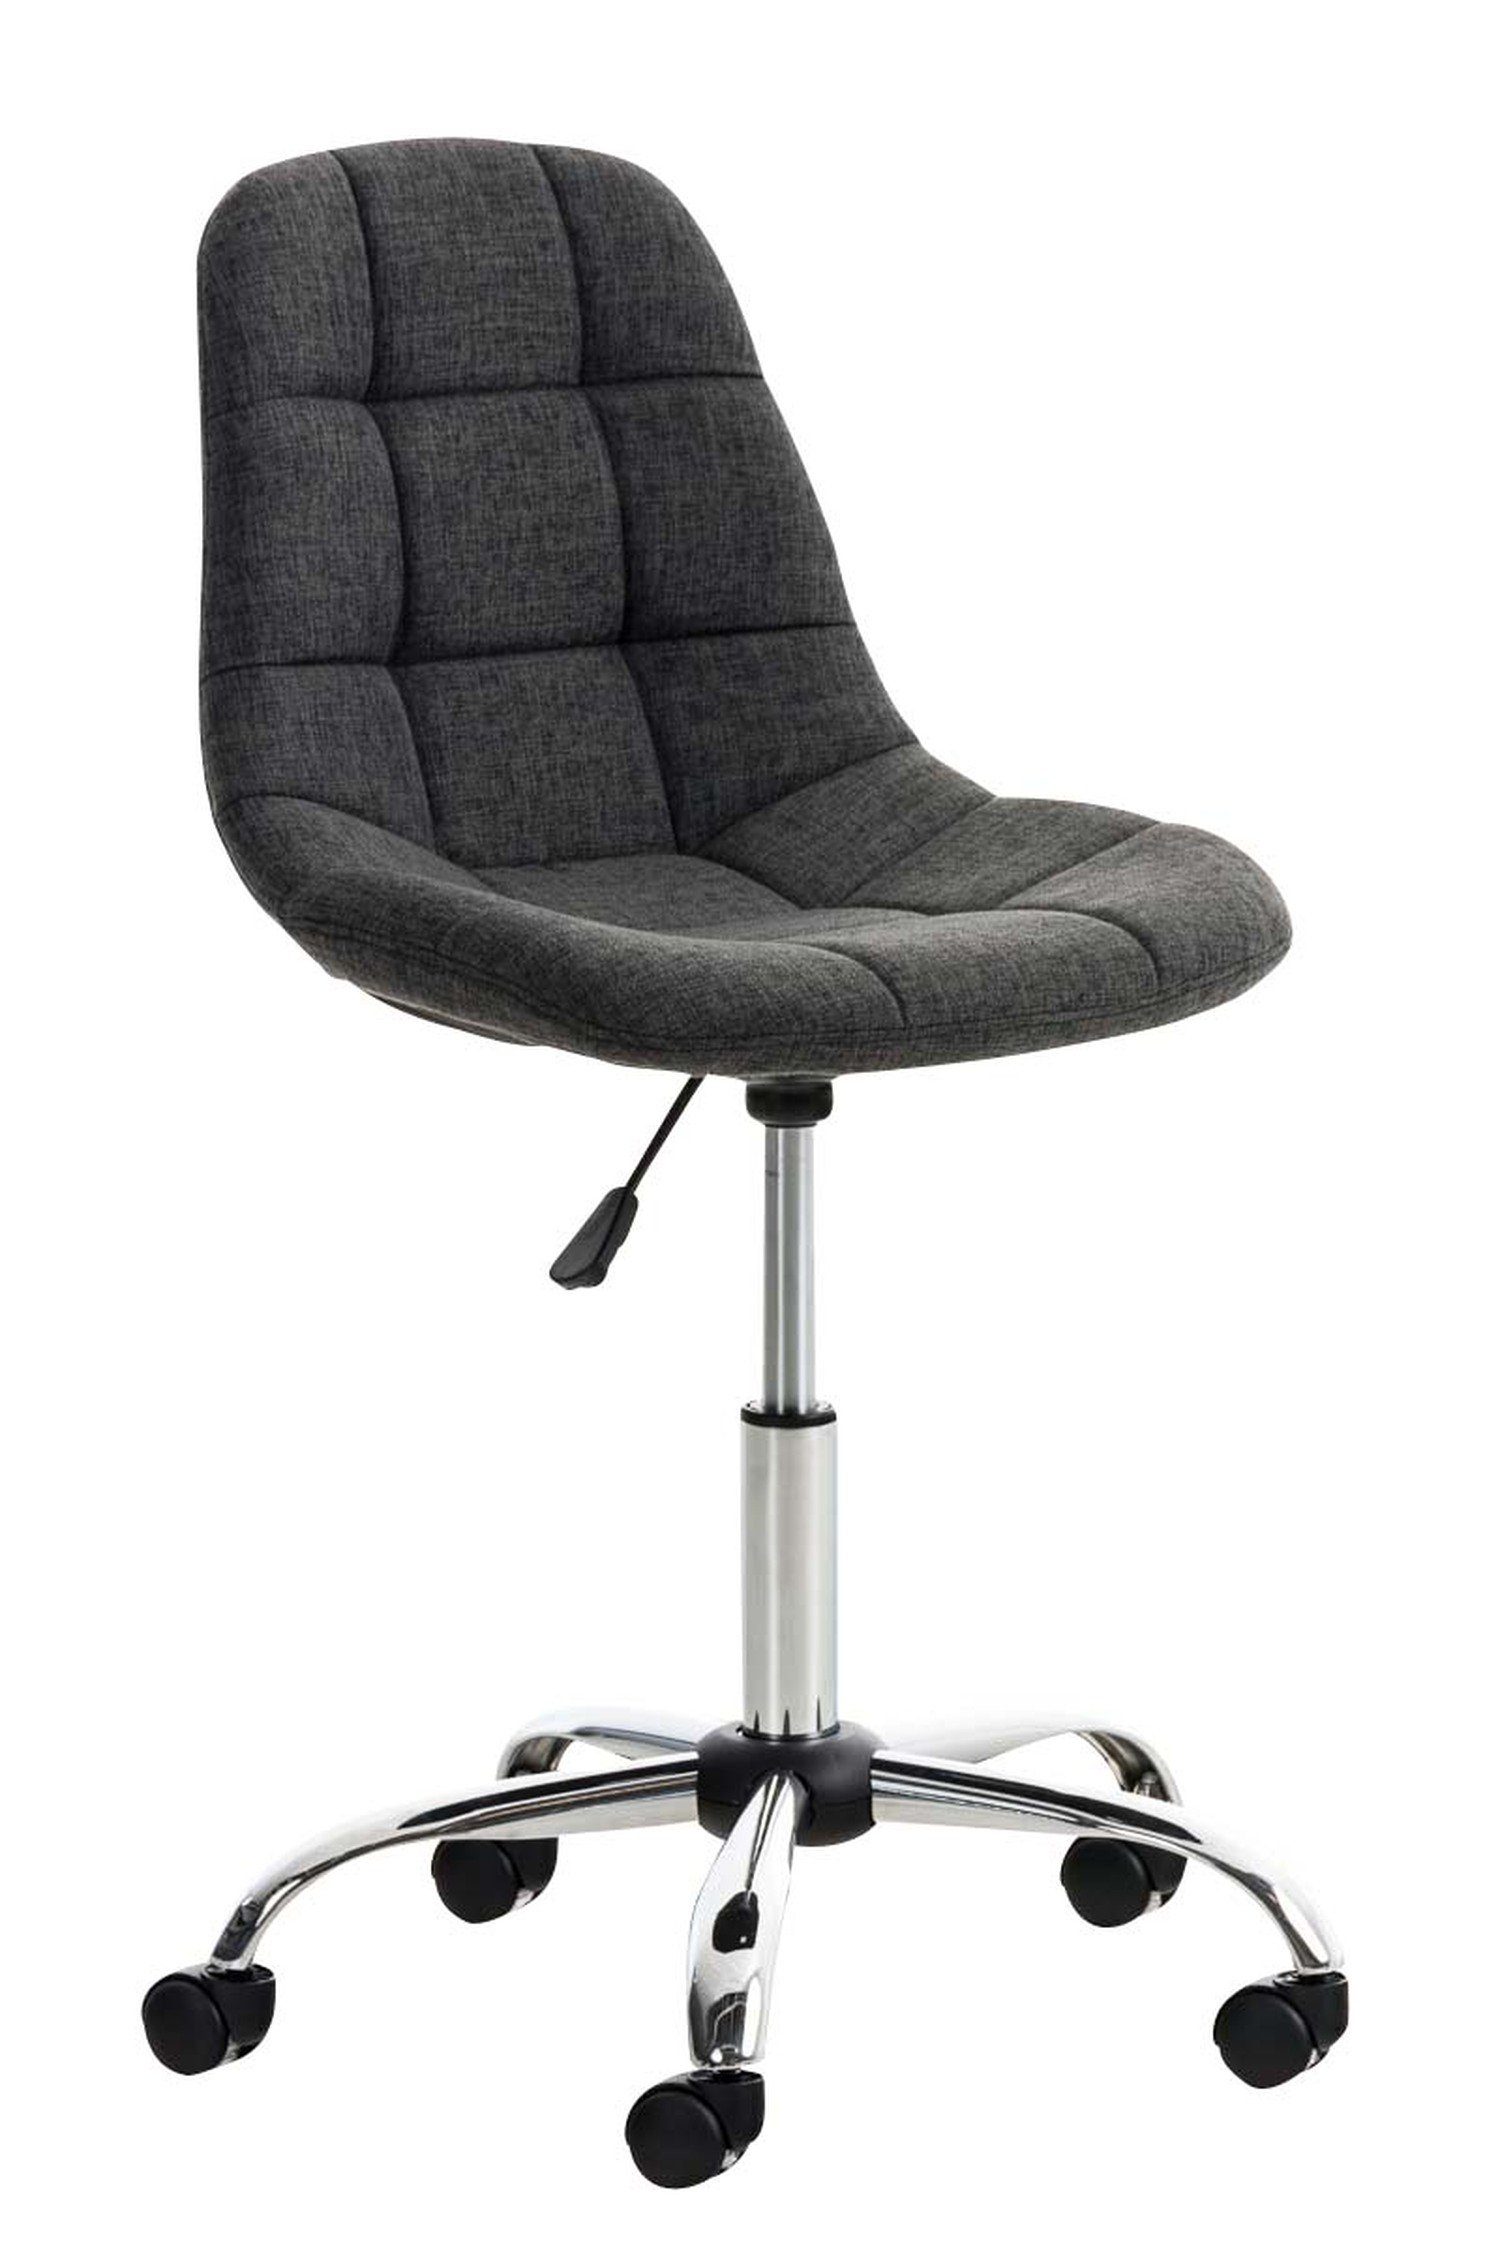 TPFLiving Bürostuhl Emily mit bequemer Rückenlehne - höhenverstellbar und 360° drehbar (Schreibtischstuhl, Drehstuhl, Chefsessel, Konferenzstuhl), Gestell: Metall chrom - Sitzfläche: Stoff dunkelgrau